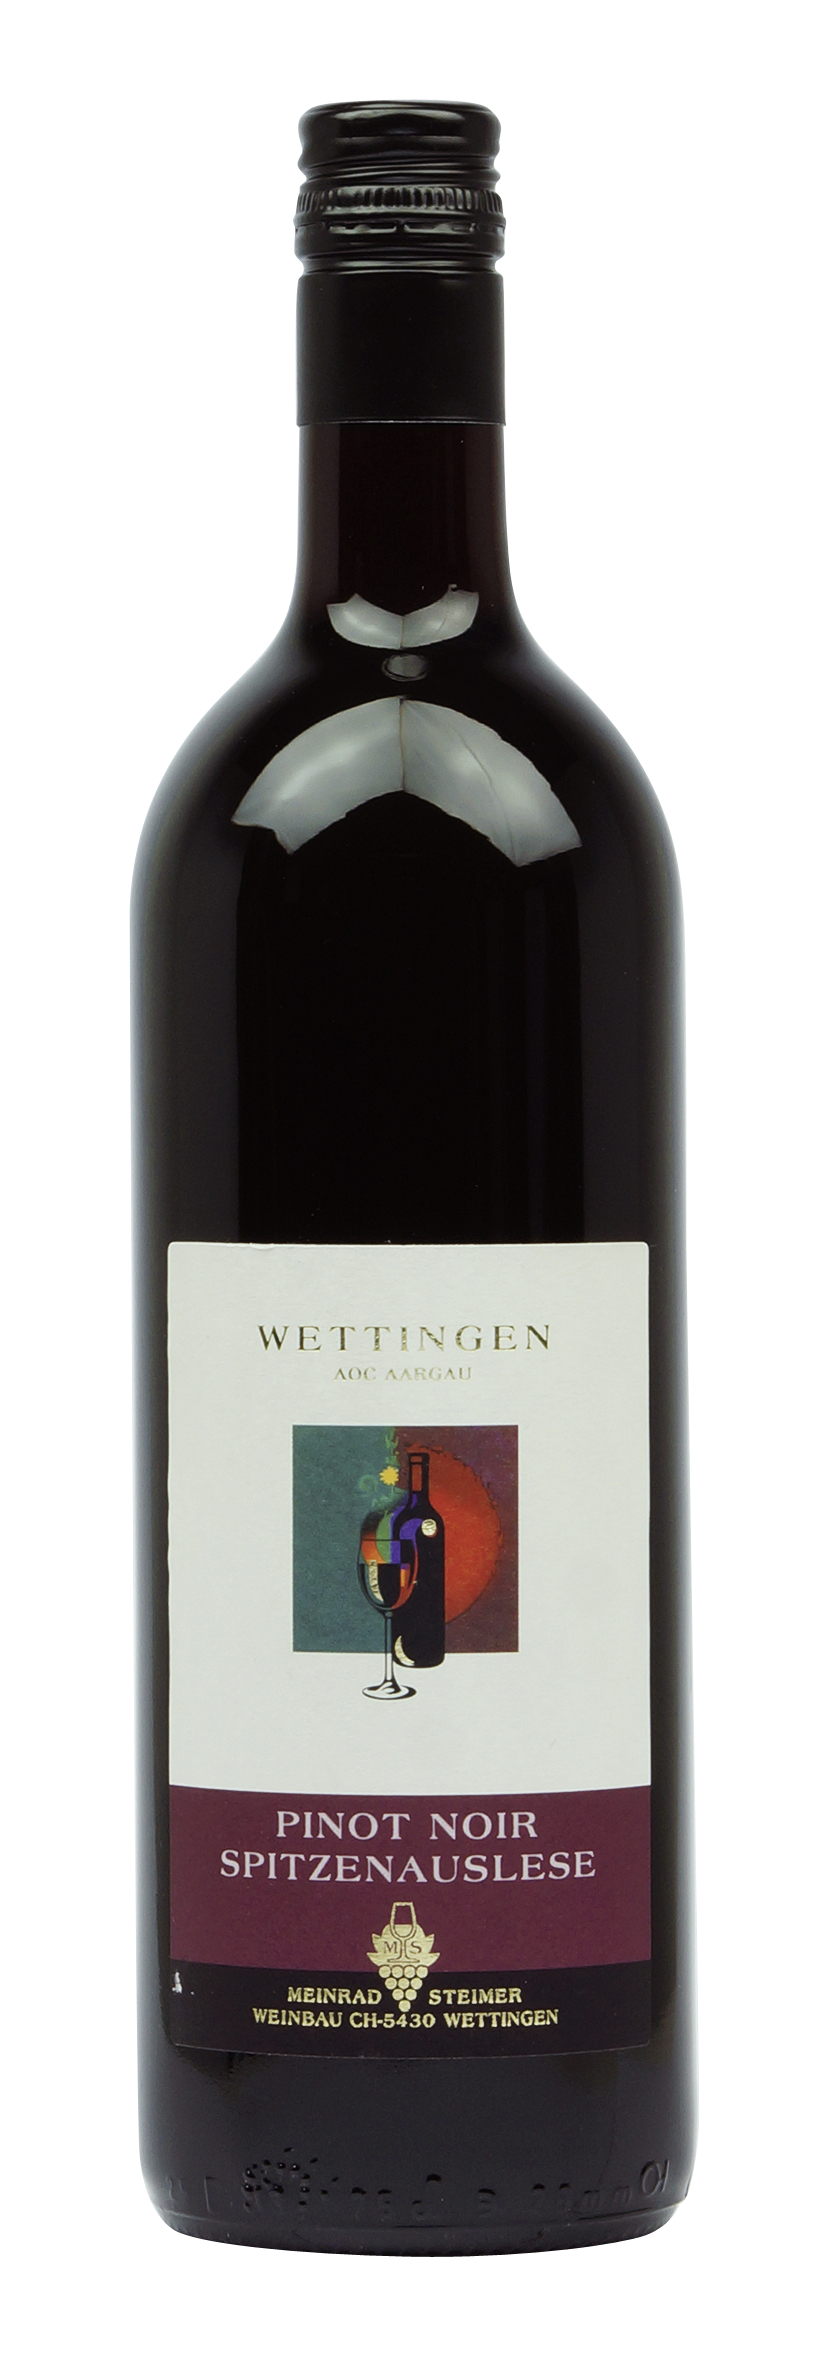 Aargau AOC Wettingen Pinot Noir Spitzenauslese 2017